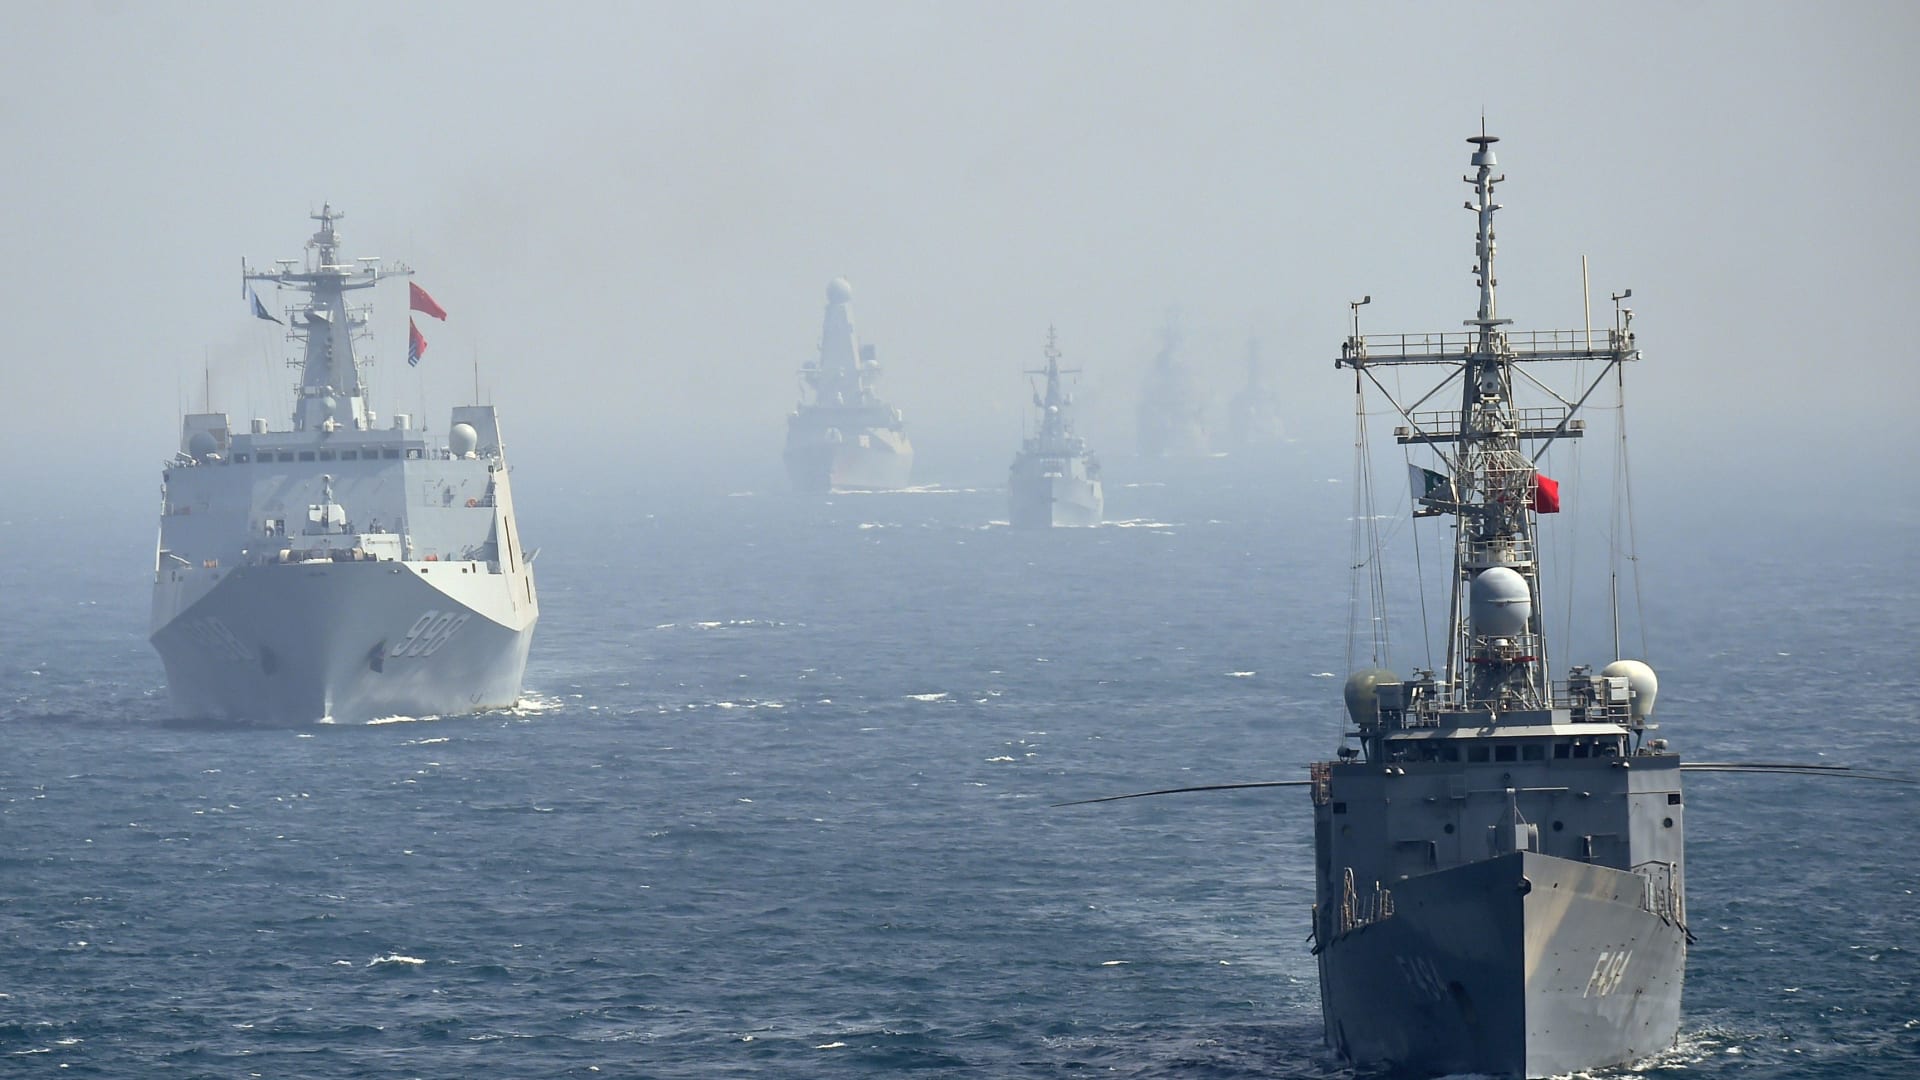 بين مصر وتركيا واليونان.. من يمتلك القوة البحرية الأكبر؟